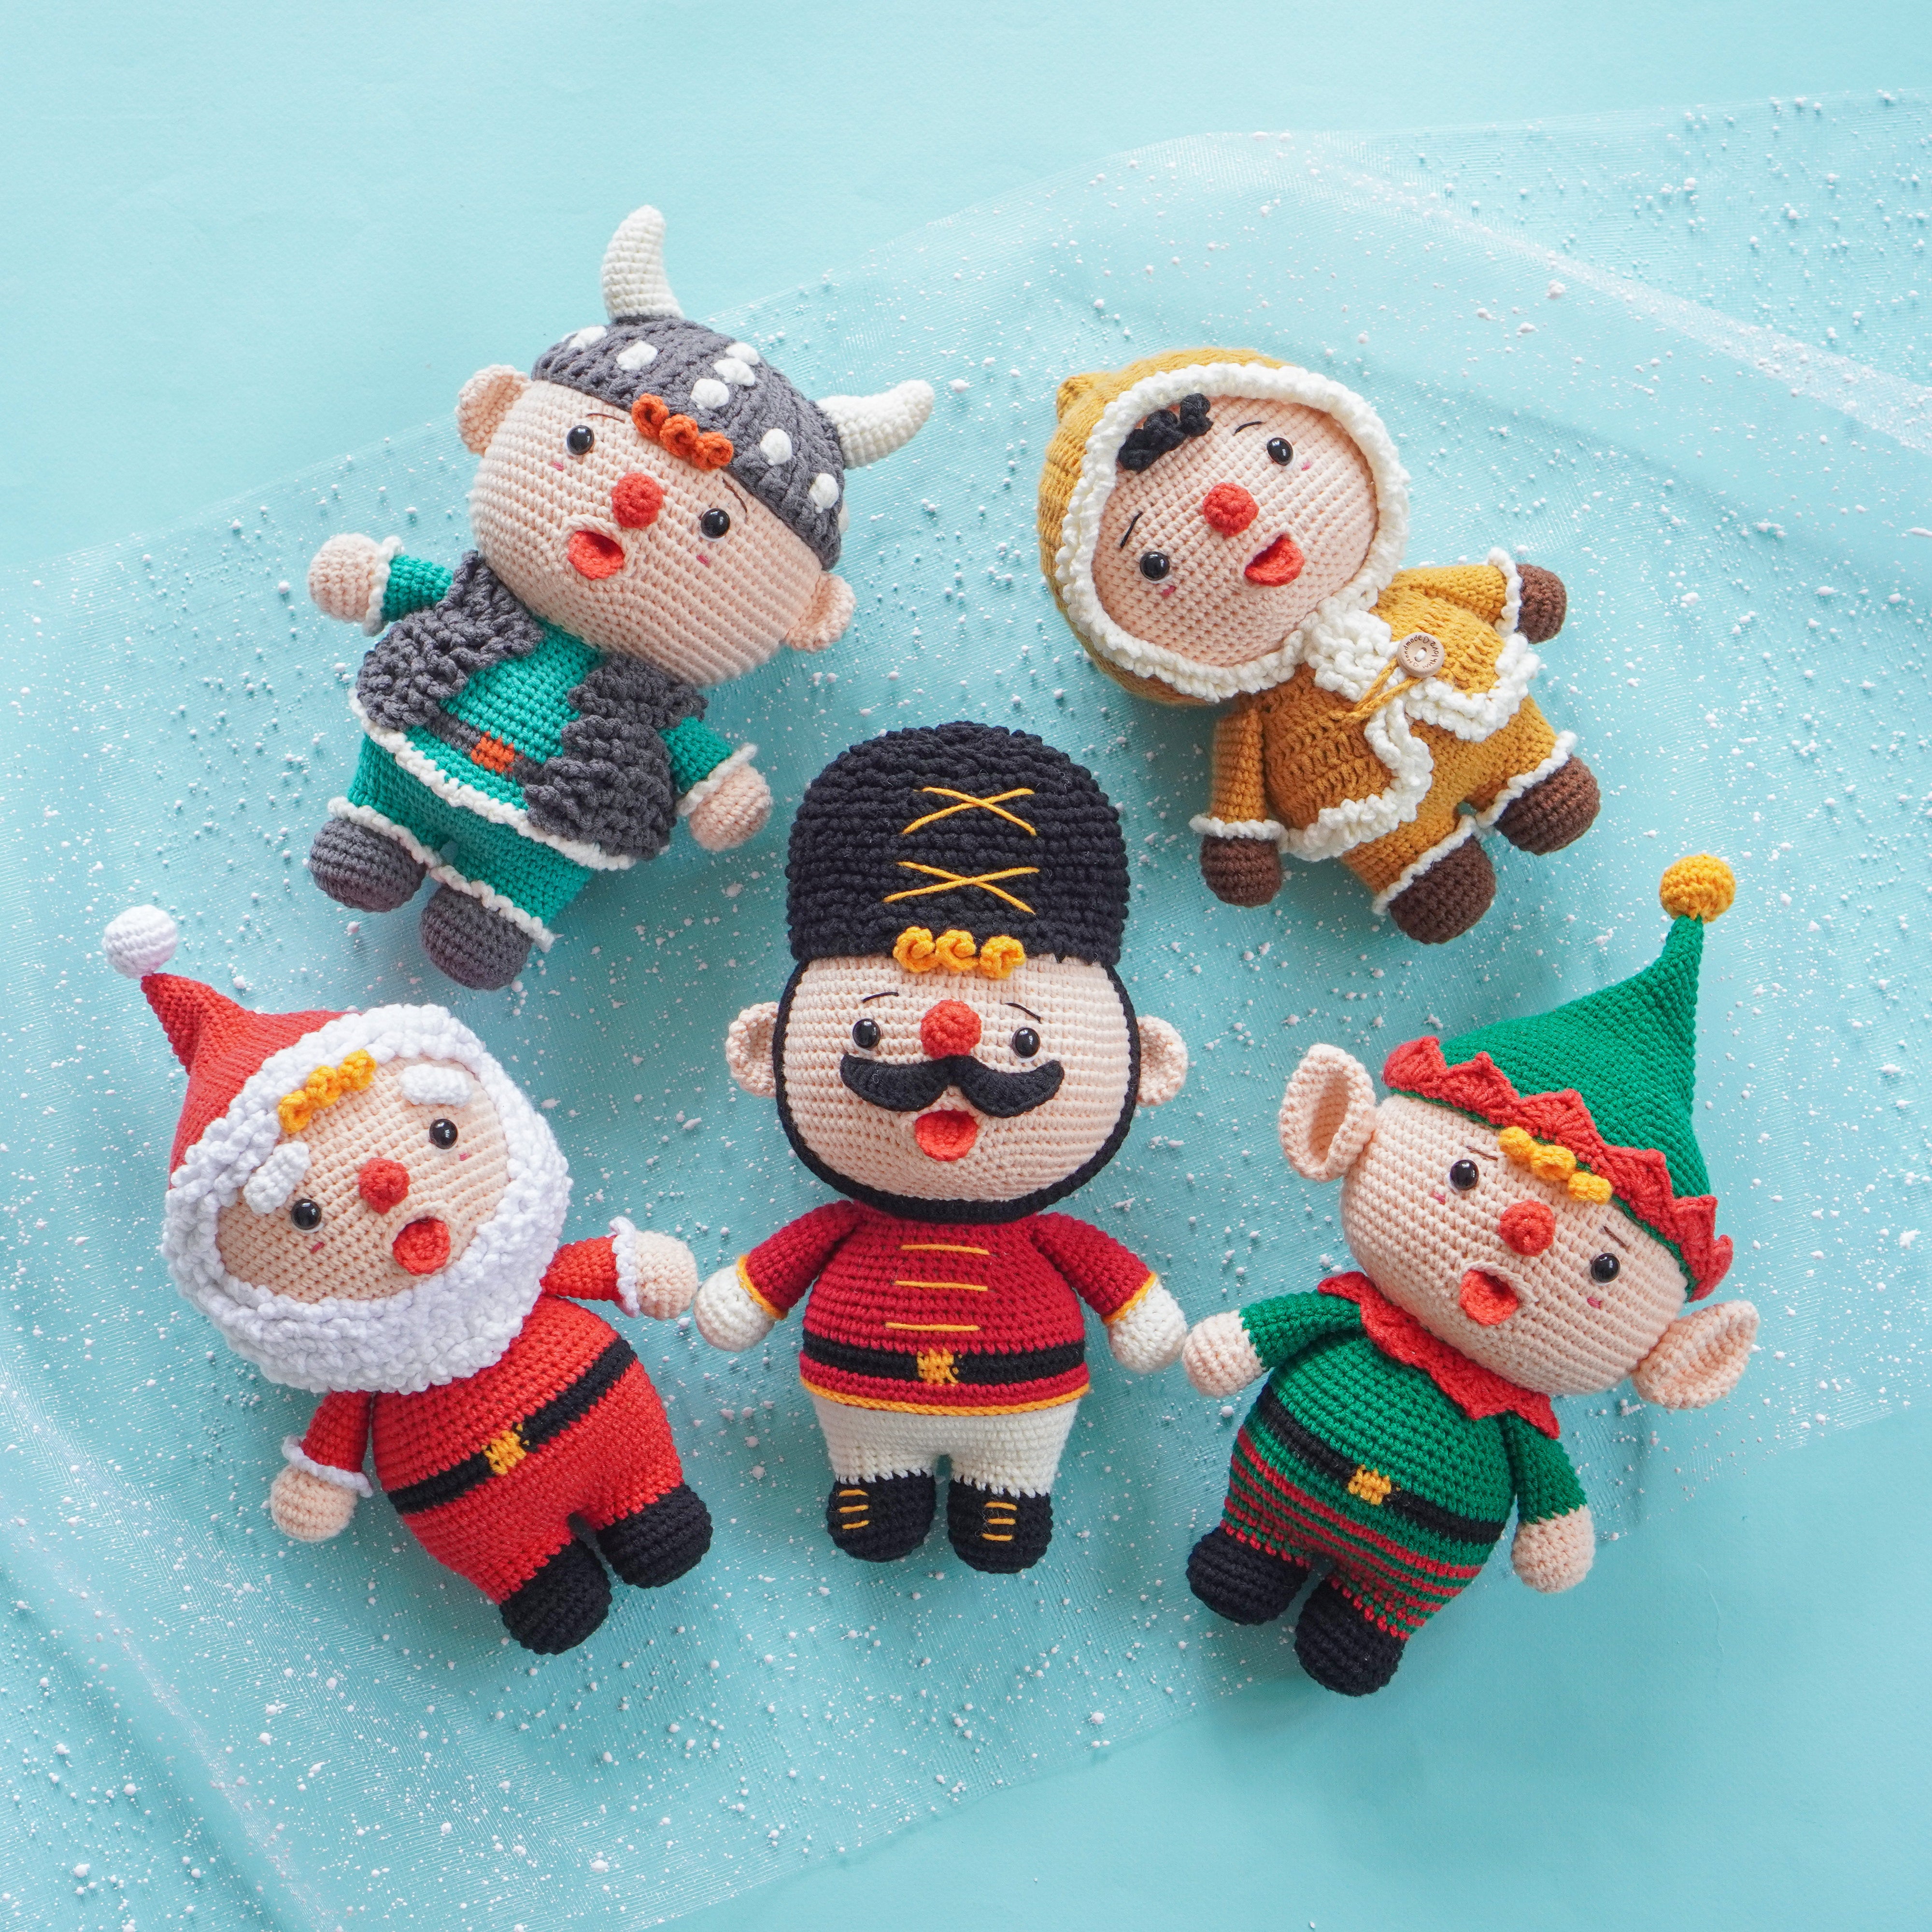 Bundle 5 in 1: Tin Soldier, Elf, Santa, Eskimo & Viking Boy Crochet Pattern by Aquariwool Crochet (Crochet Doll Pattern/Amigurumi Pattern for Baby gift)